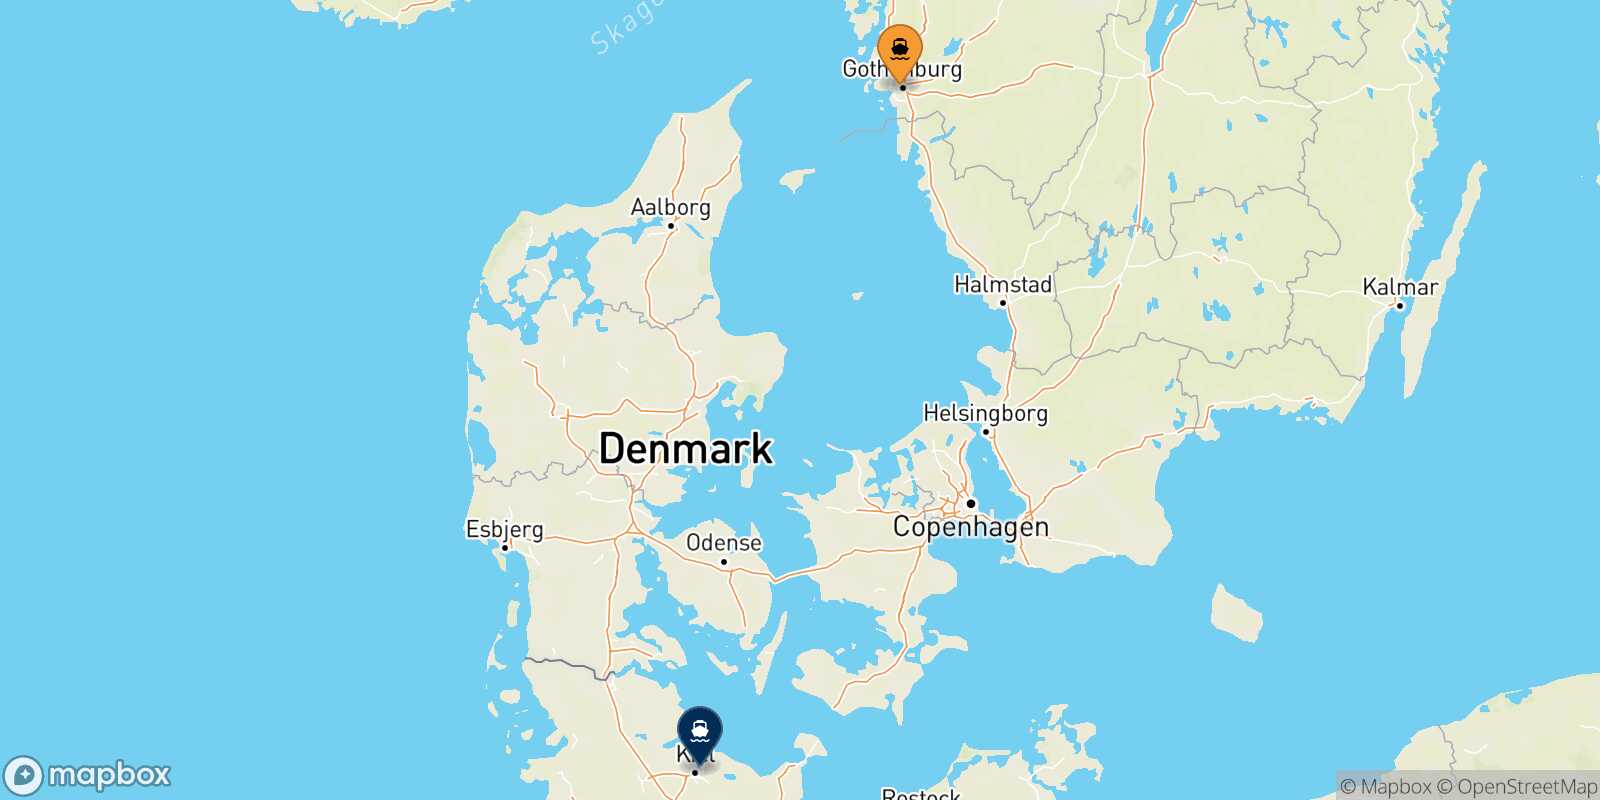 Mappa delle destinazioni raggiungibili da Goteborg